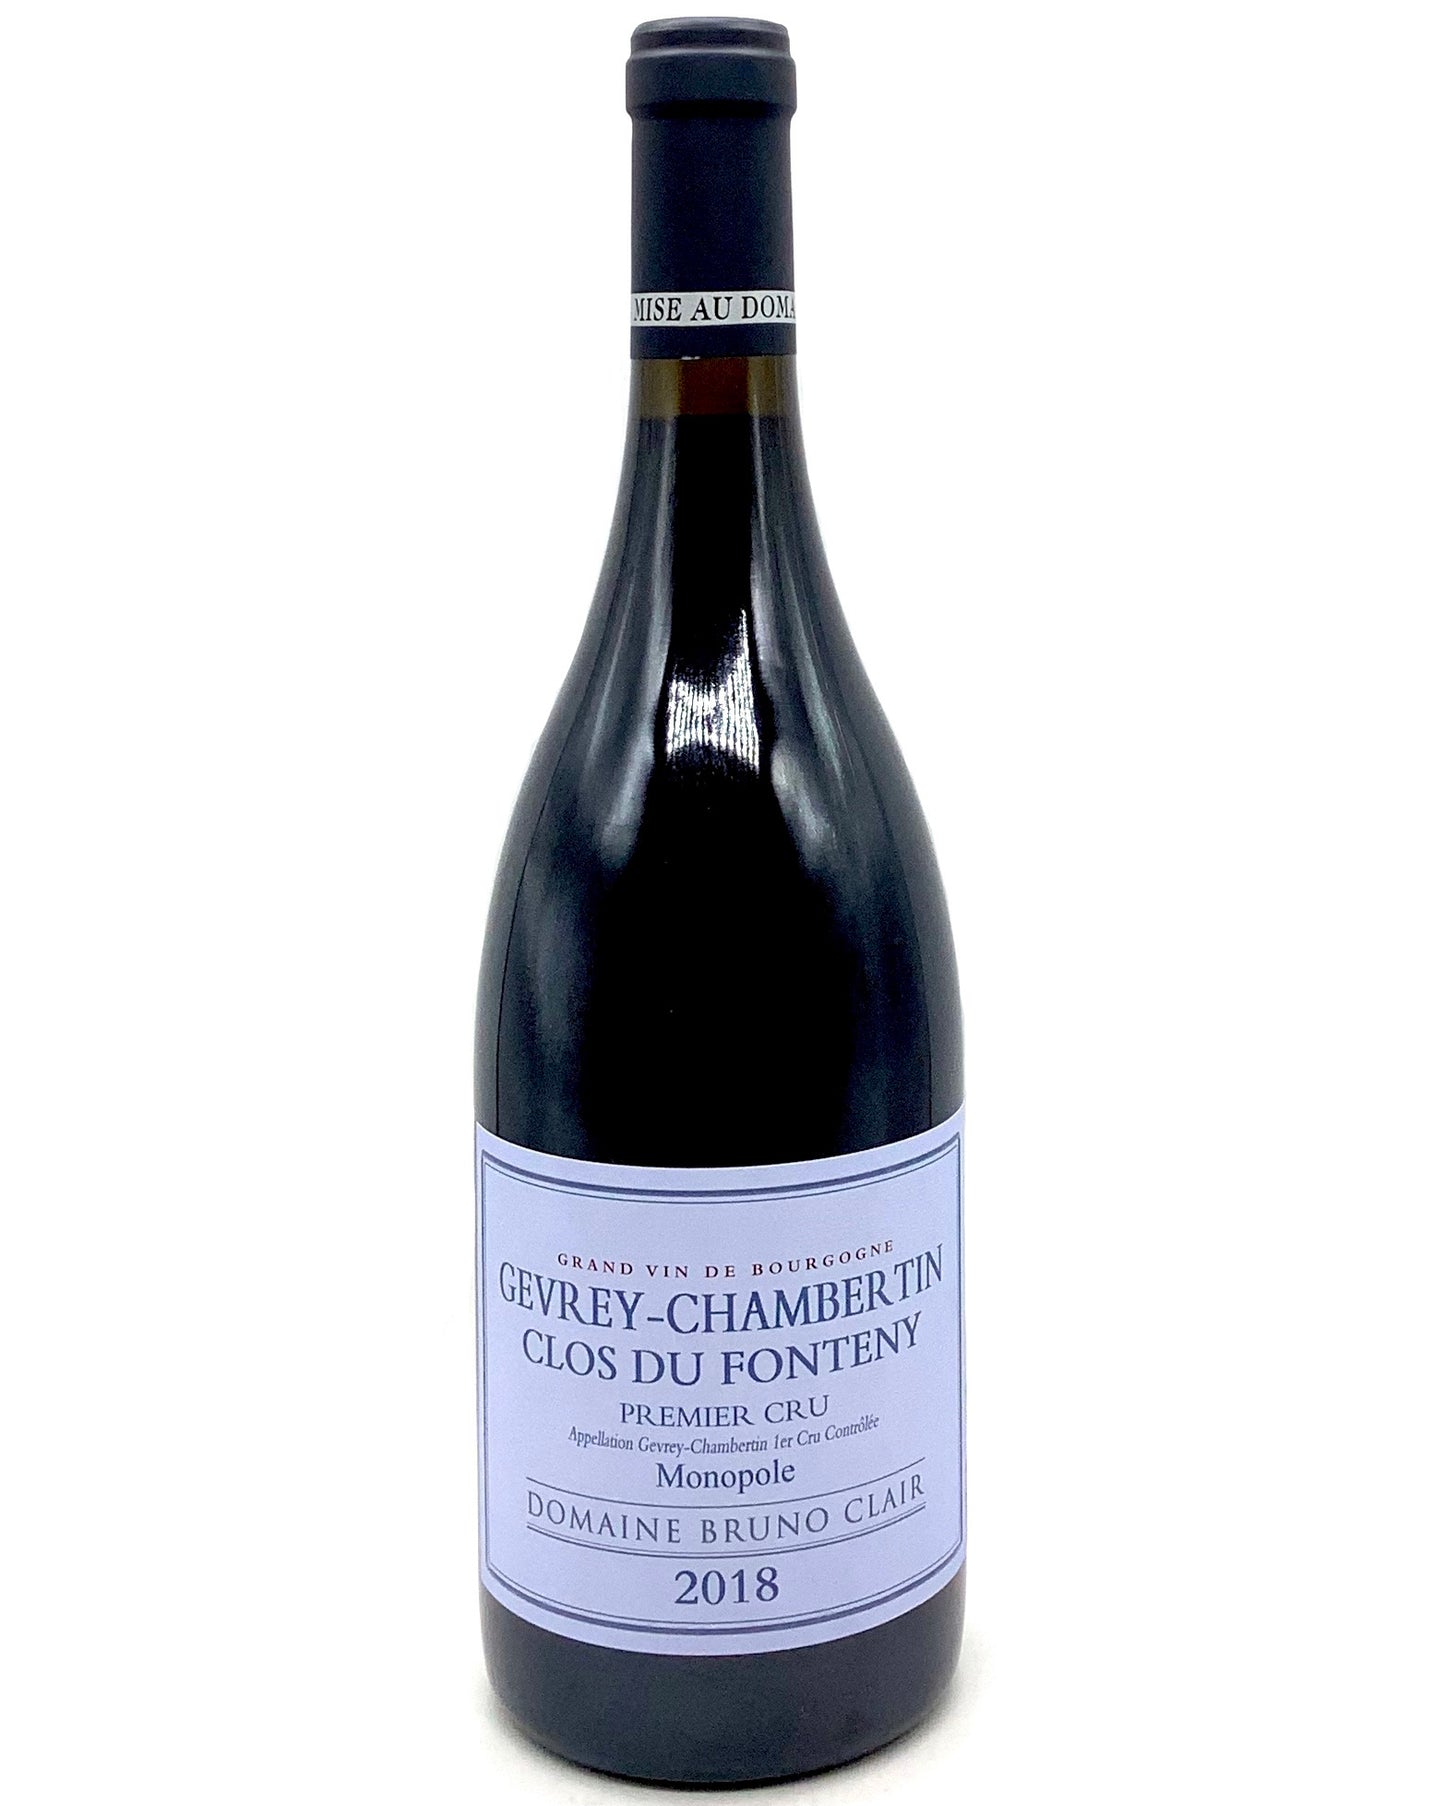 Domaine Bruno Clair, Pinot Noir, Gevrey-Chambertin 1er Cru, Clos du Fonteney, Côte de Nuits, France 2018 newarrivals organic